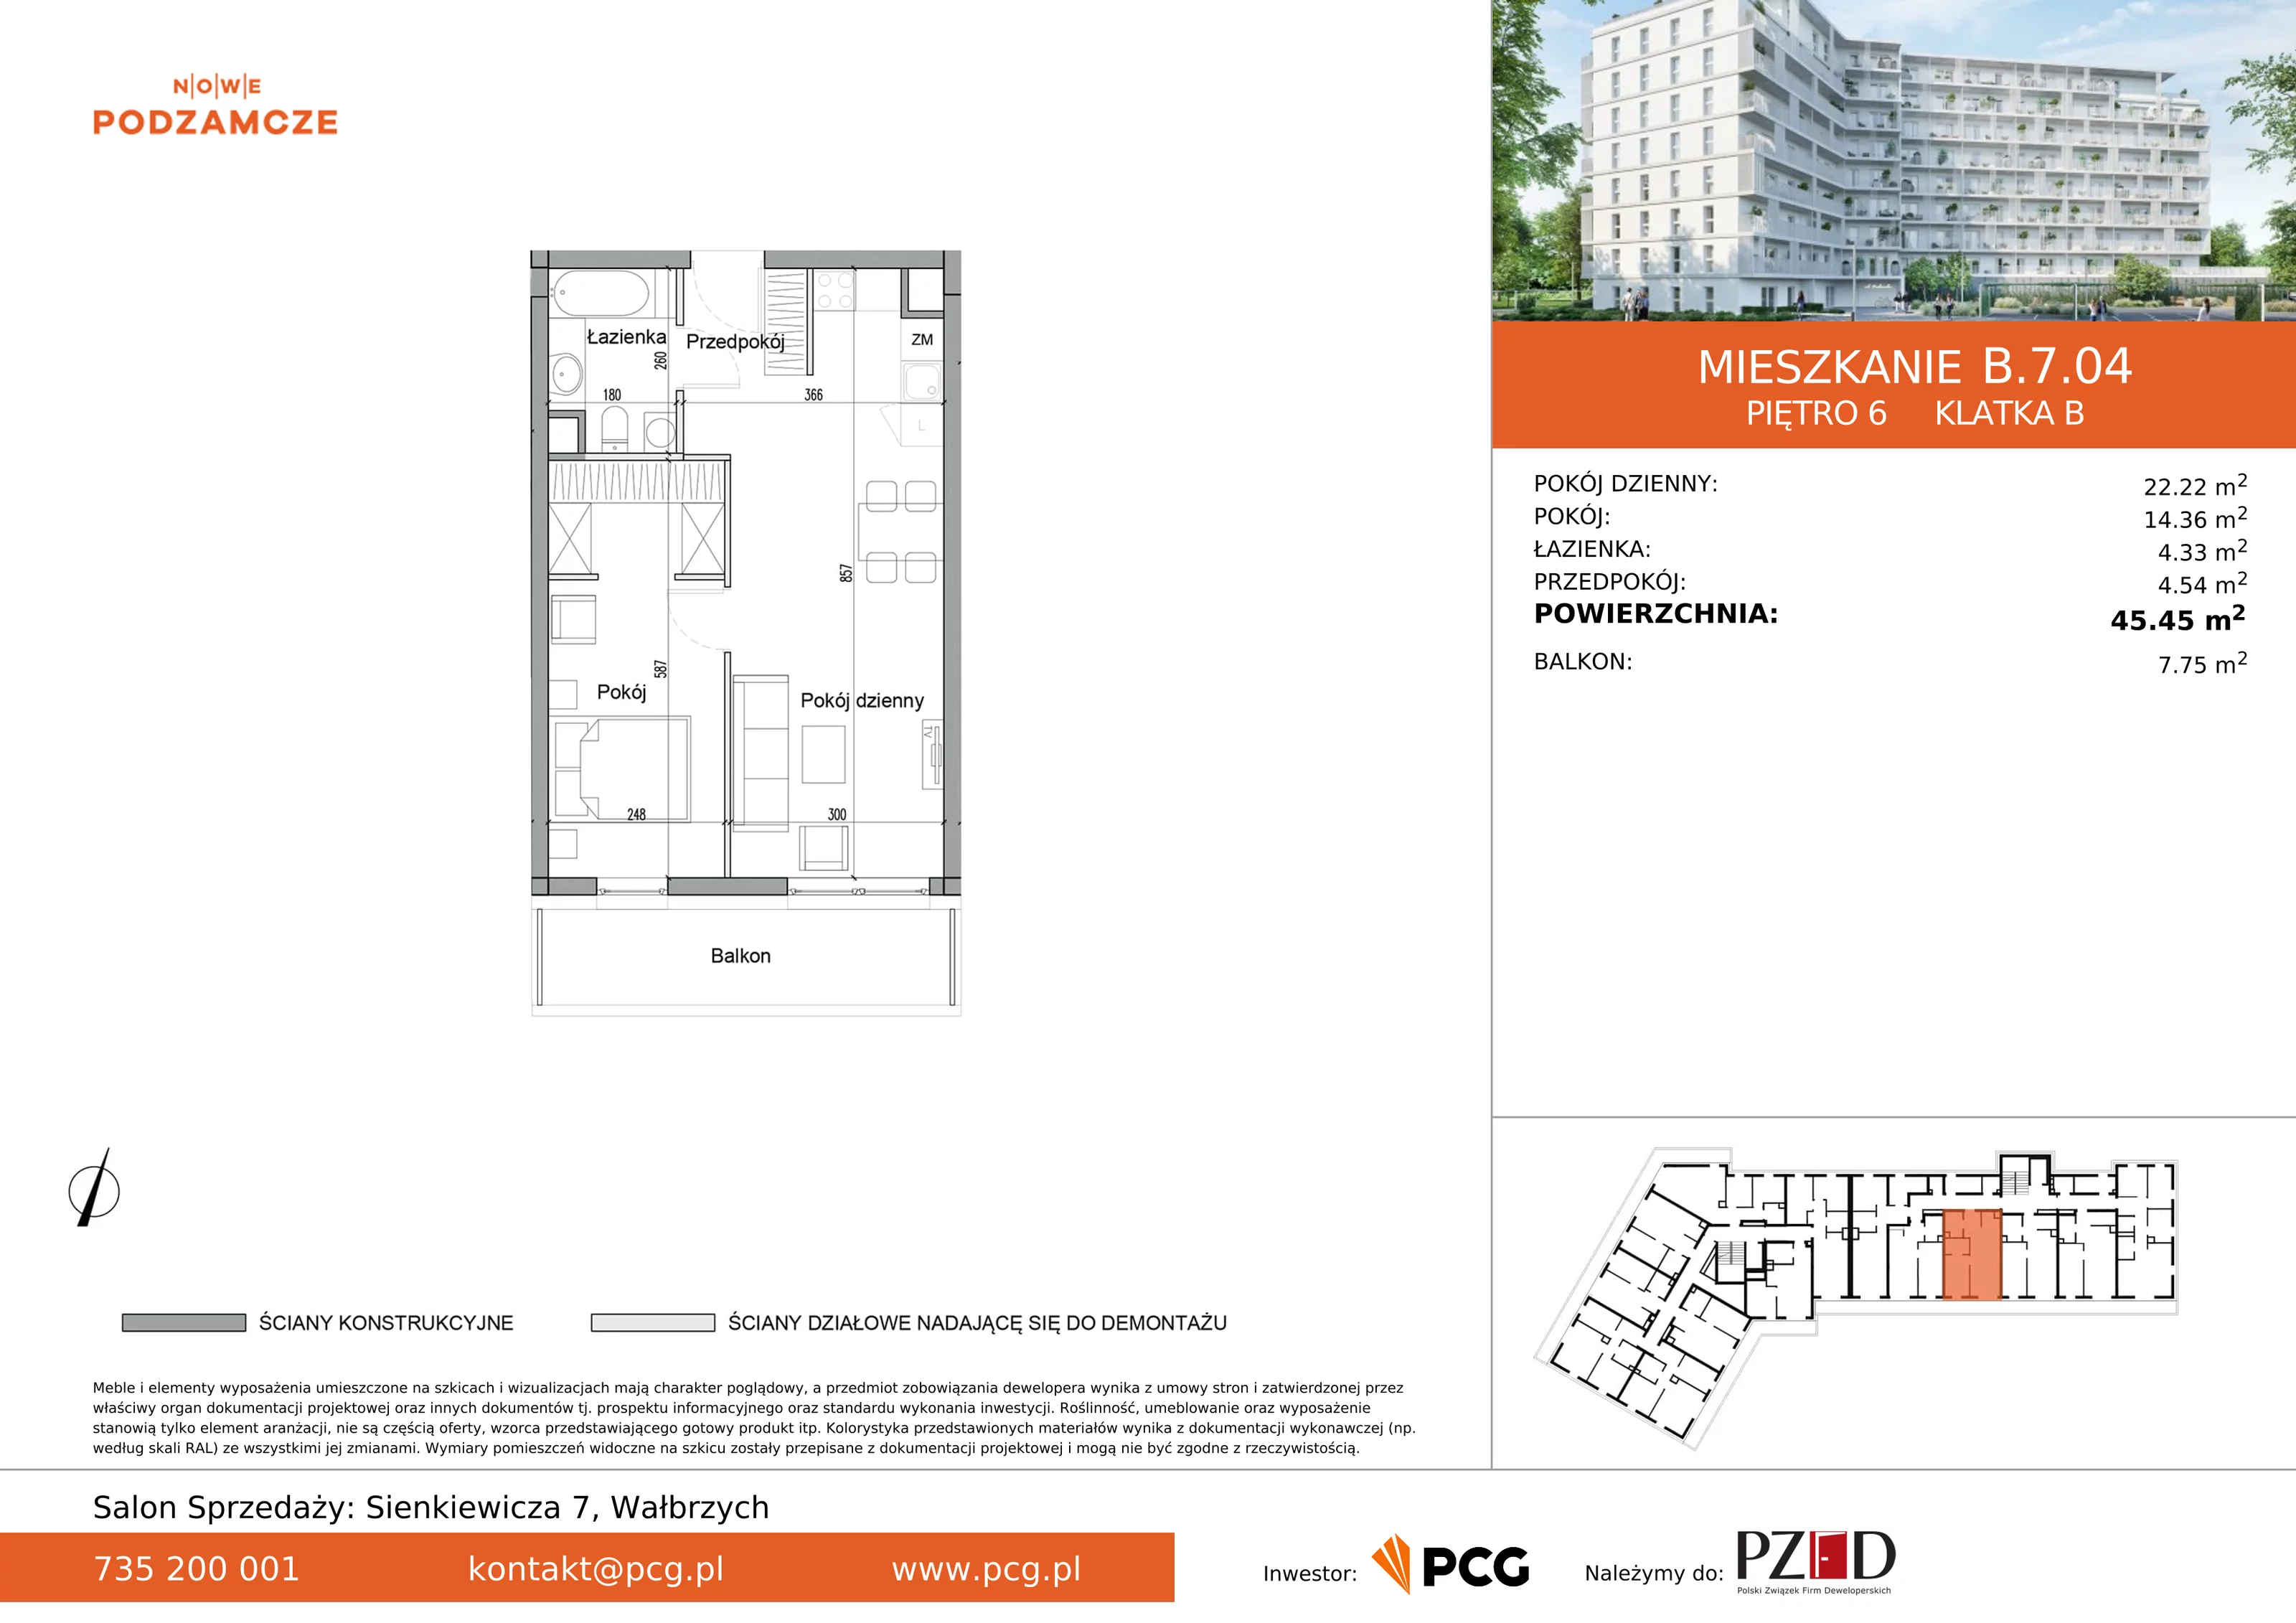 Mieszkanie 45,45 m², piętro 6, oferta nr B.7.04, Nowe Podzamcze, Wałbrzych, al. Podwale 2, 4